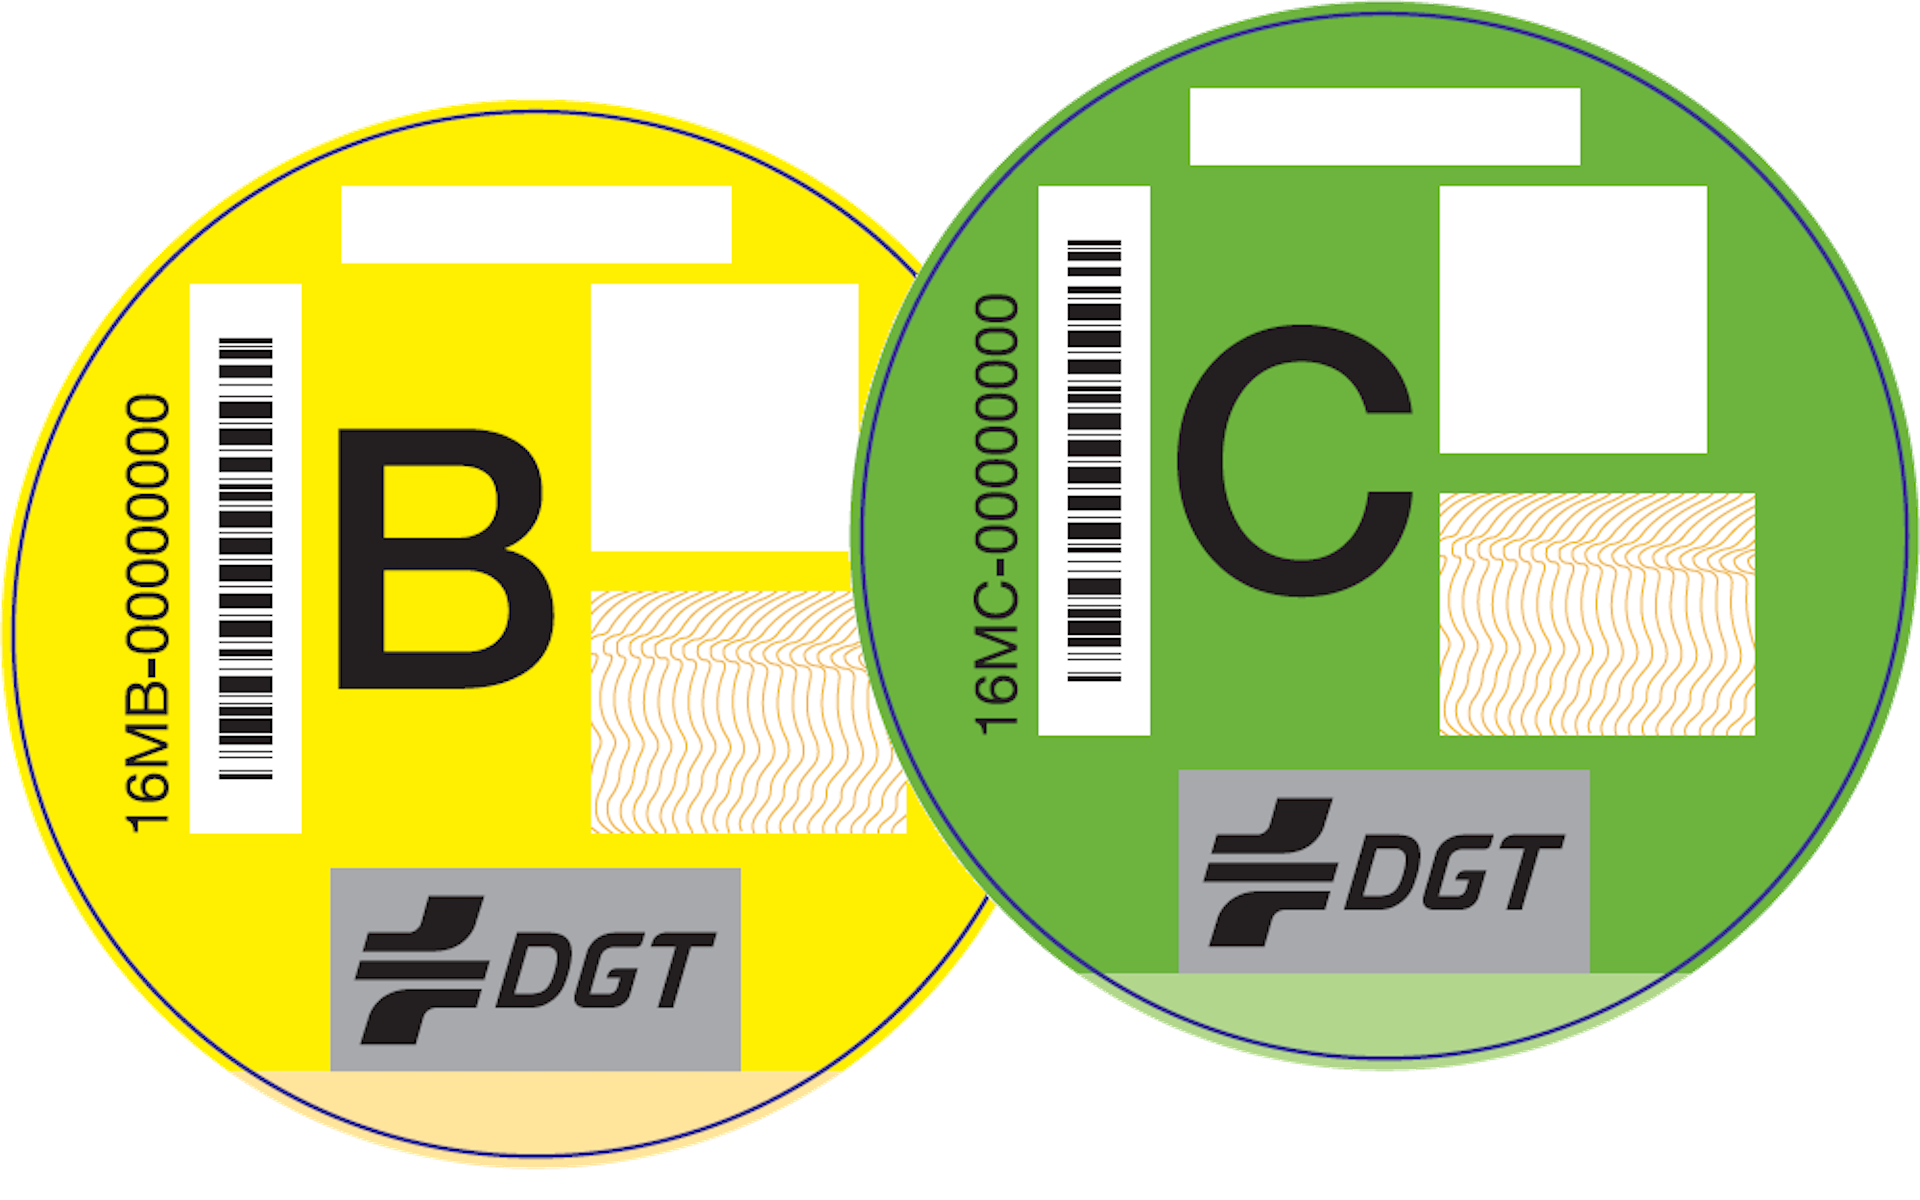 Las etiquetas de la DGT: ¿qué indica cada una de ellas?